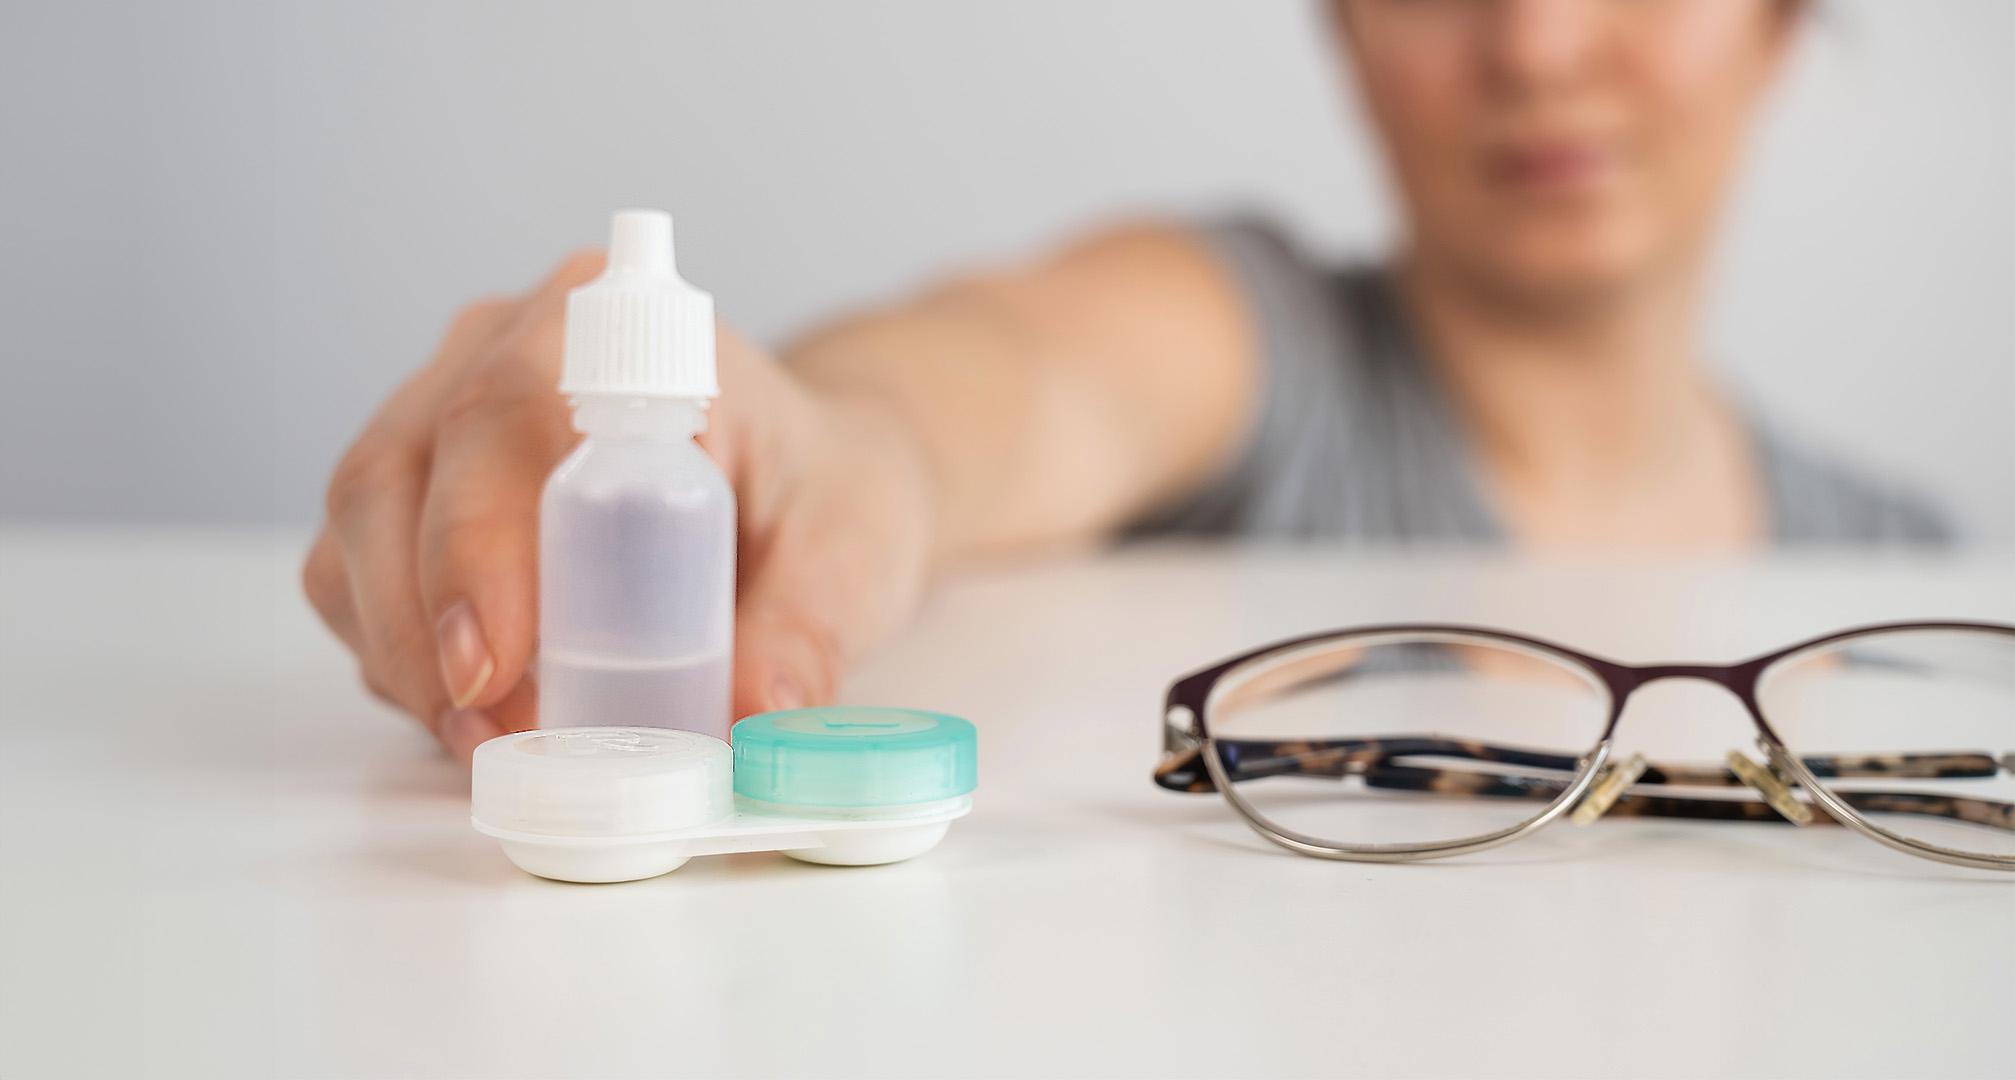 detailný obrázok očných kvapiek, puzdra na kontaktné šošovky a okuliarov na bielom stole